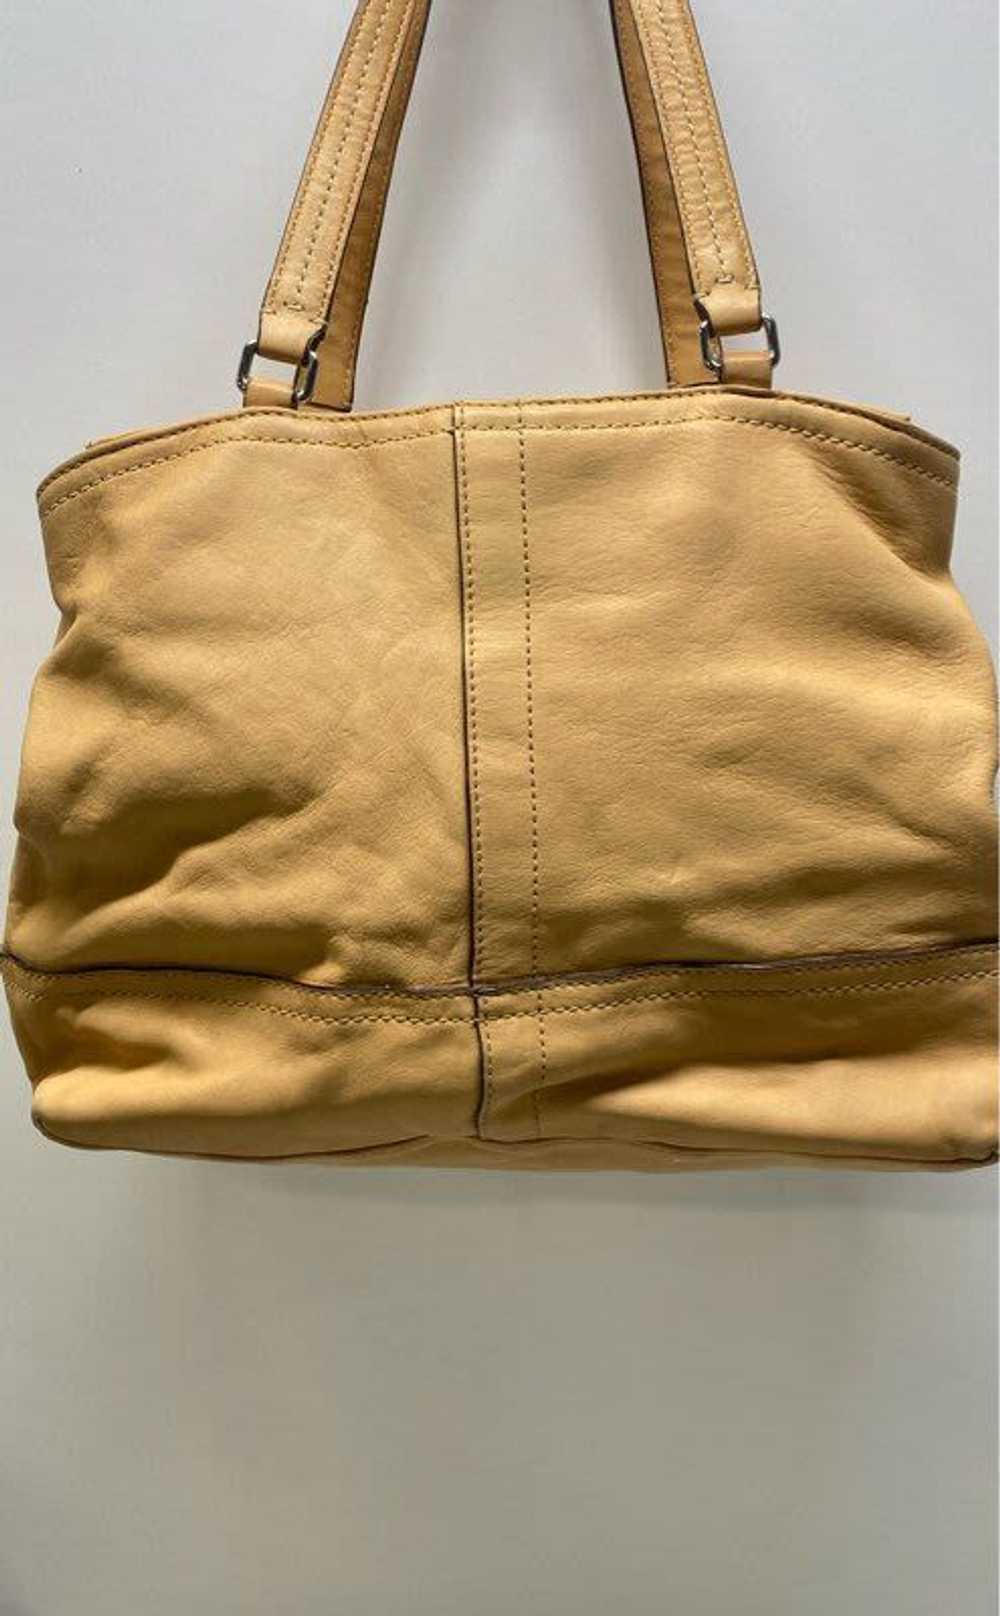 Coach Leather Shoulder Bag Tan - image 2